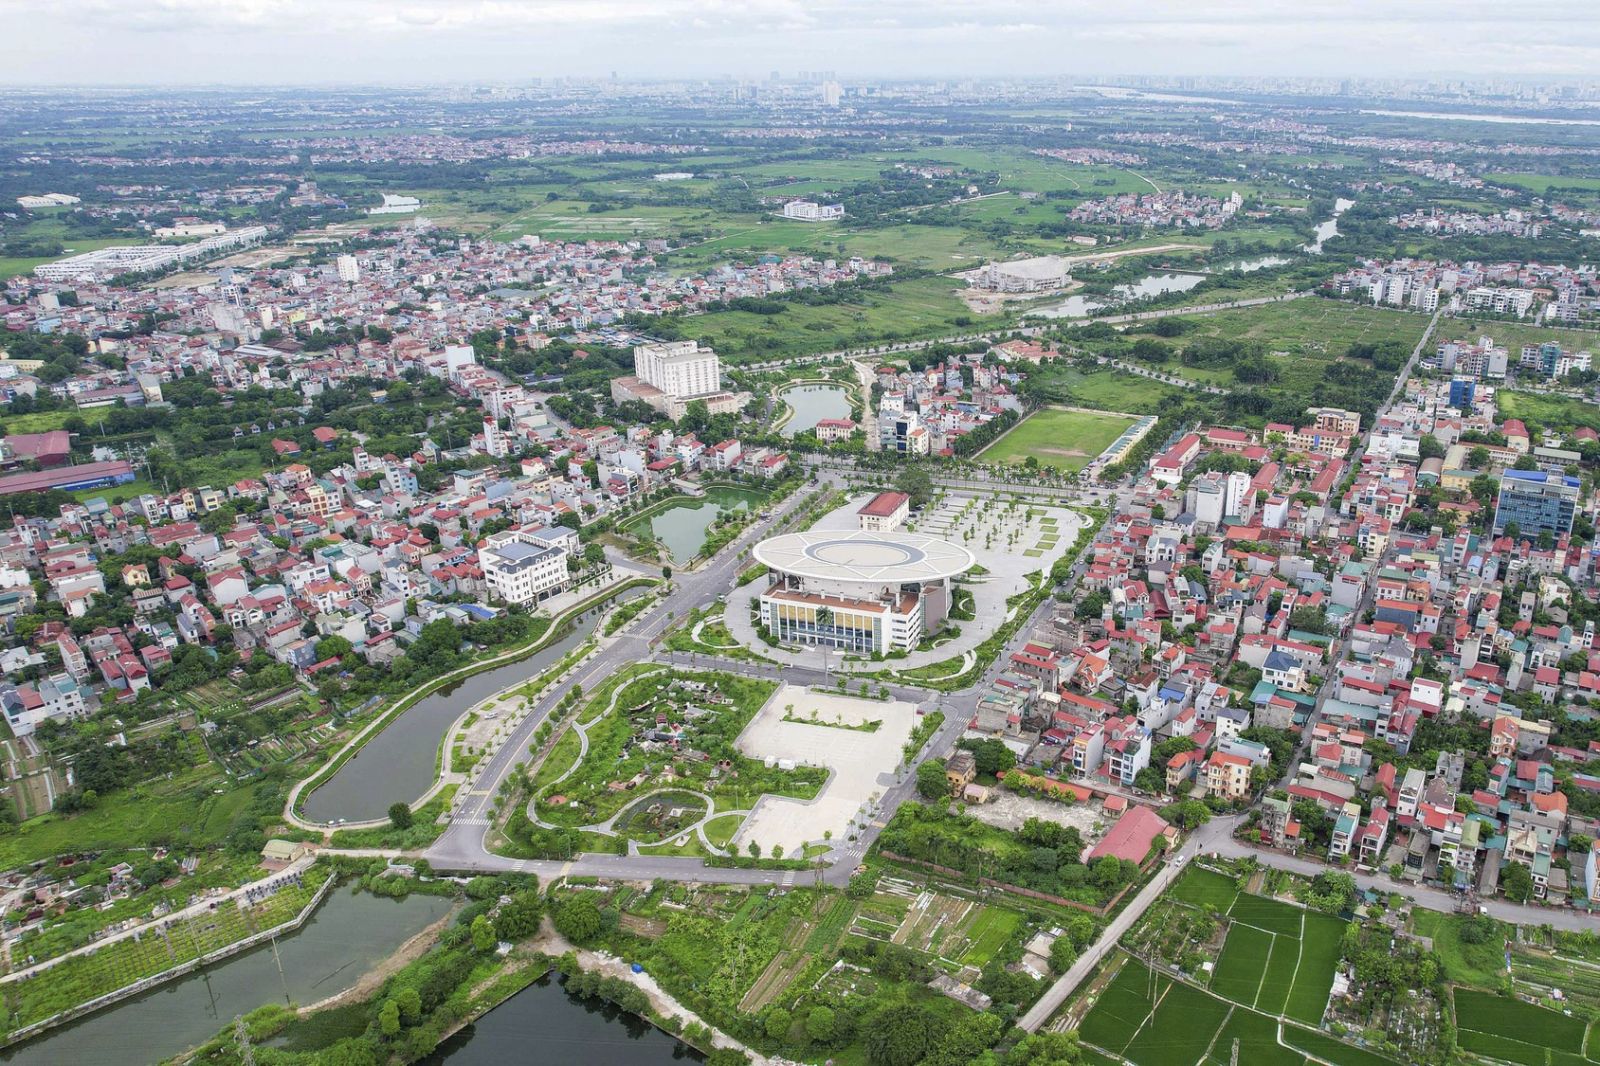 Quy hoạch Thủ đô: Mở rộng không gian phát triển sang phía Bắc sông Hồng